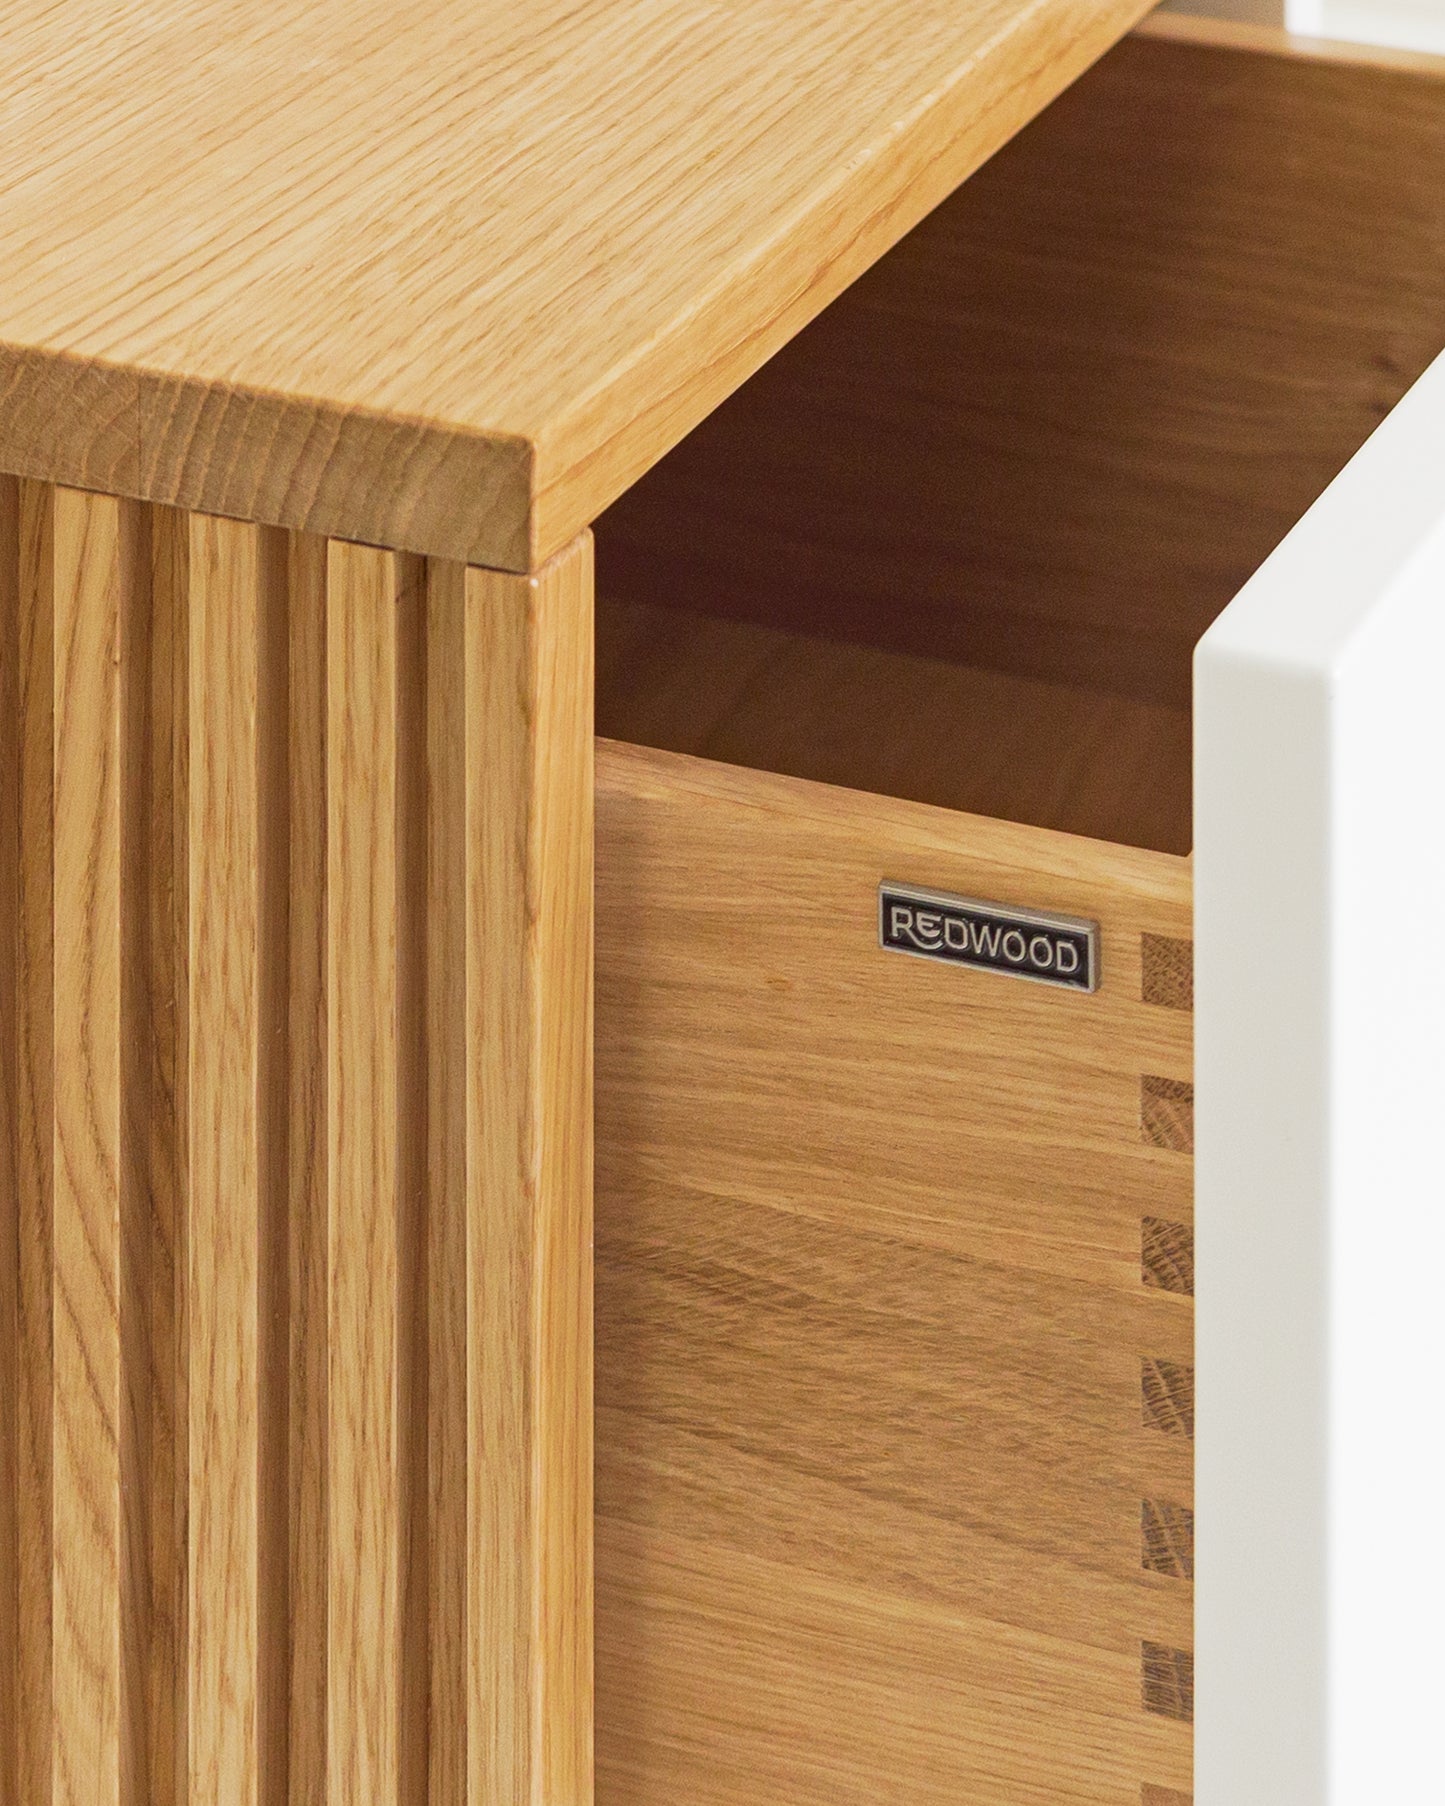 Lowboard in Eiche weiß:Schubladen in Massivholz:Die Verwendung von Massivholz für die Schubladen und die unterseitige (also nicht sichtbare) Befestigung der Auszüge sorgen nicht nur für ein hochwertiges Design, sondern auch für maximale Stabilität und Langlebigkeit.